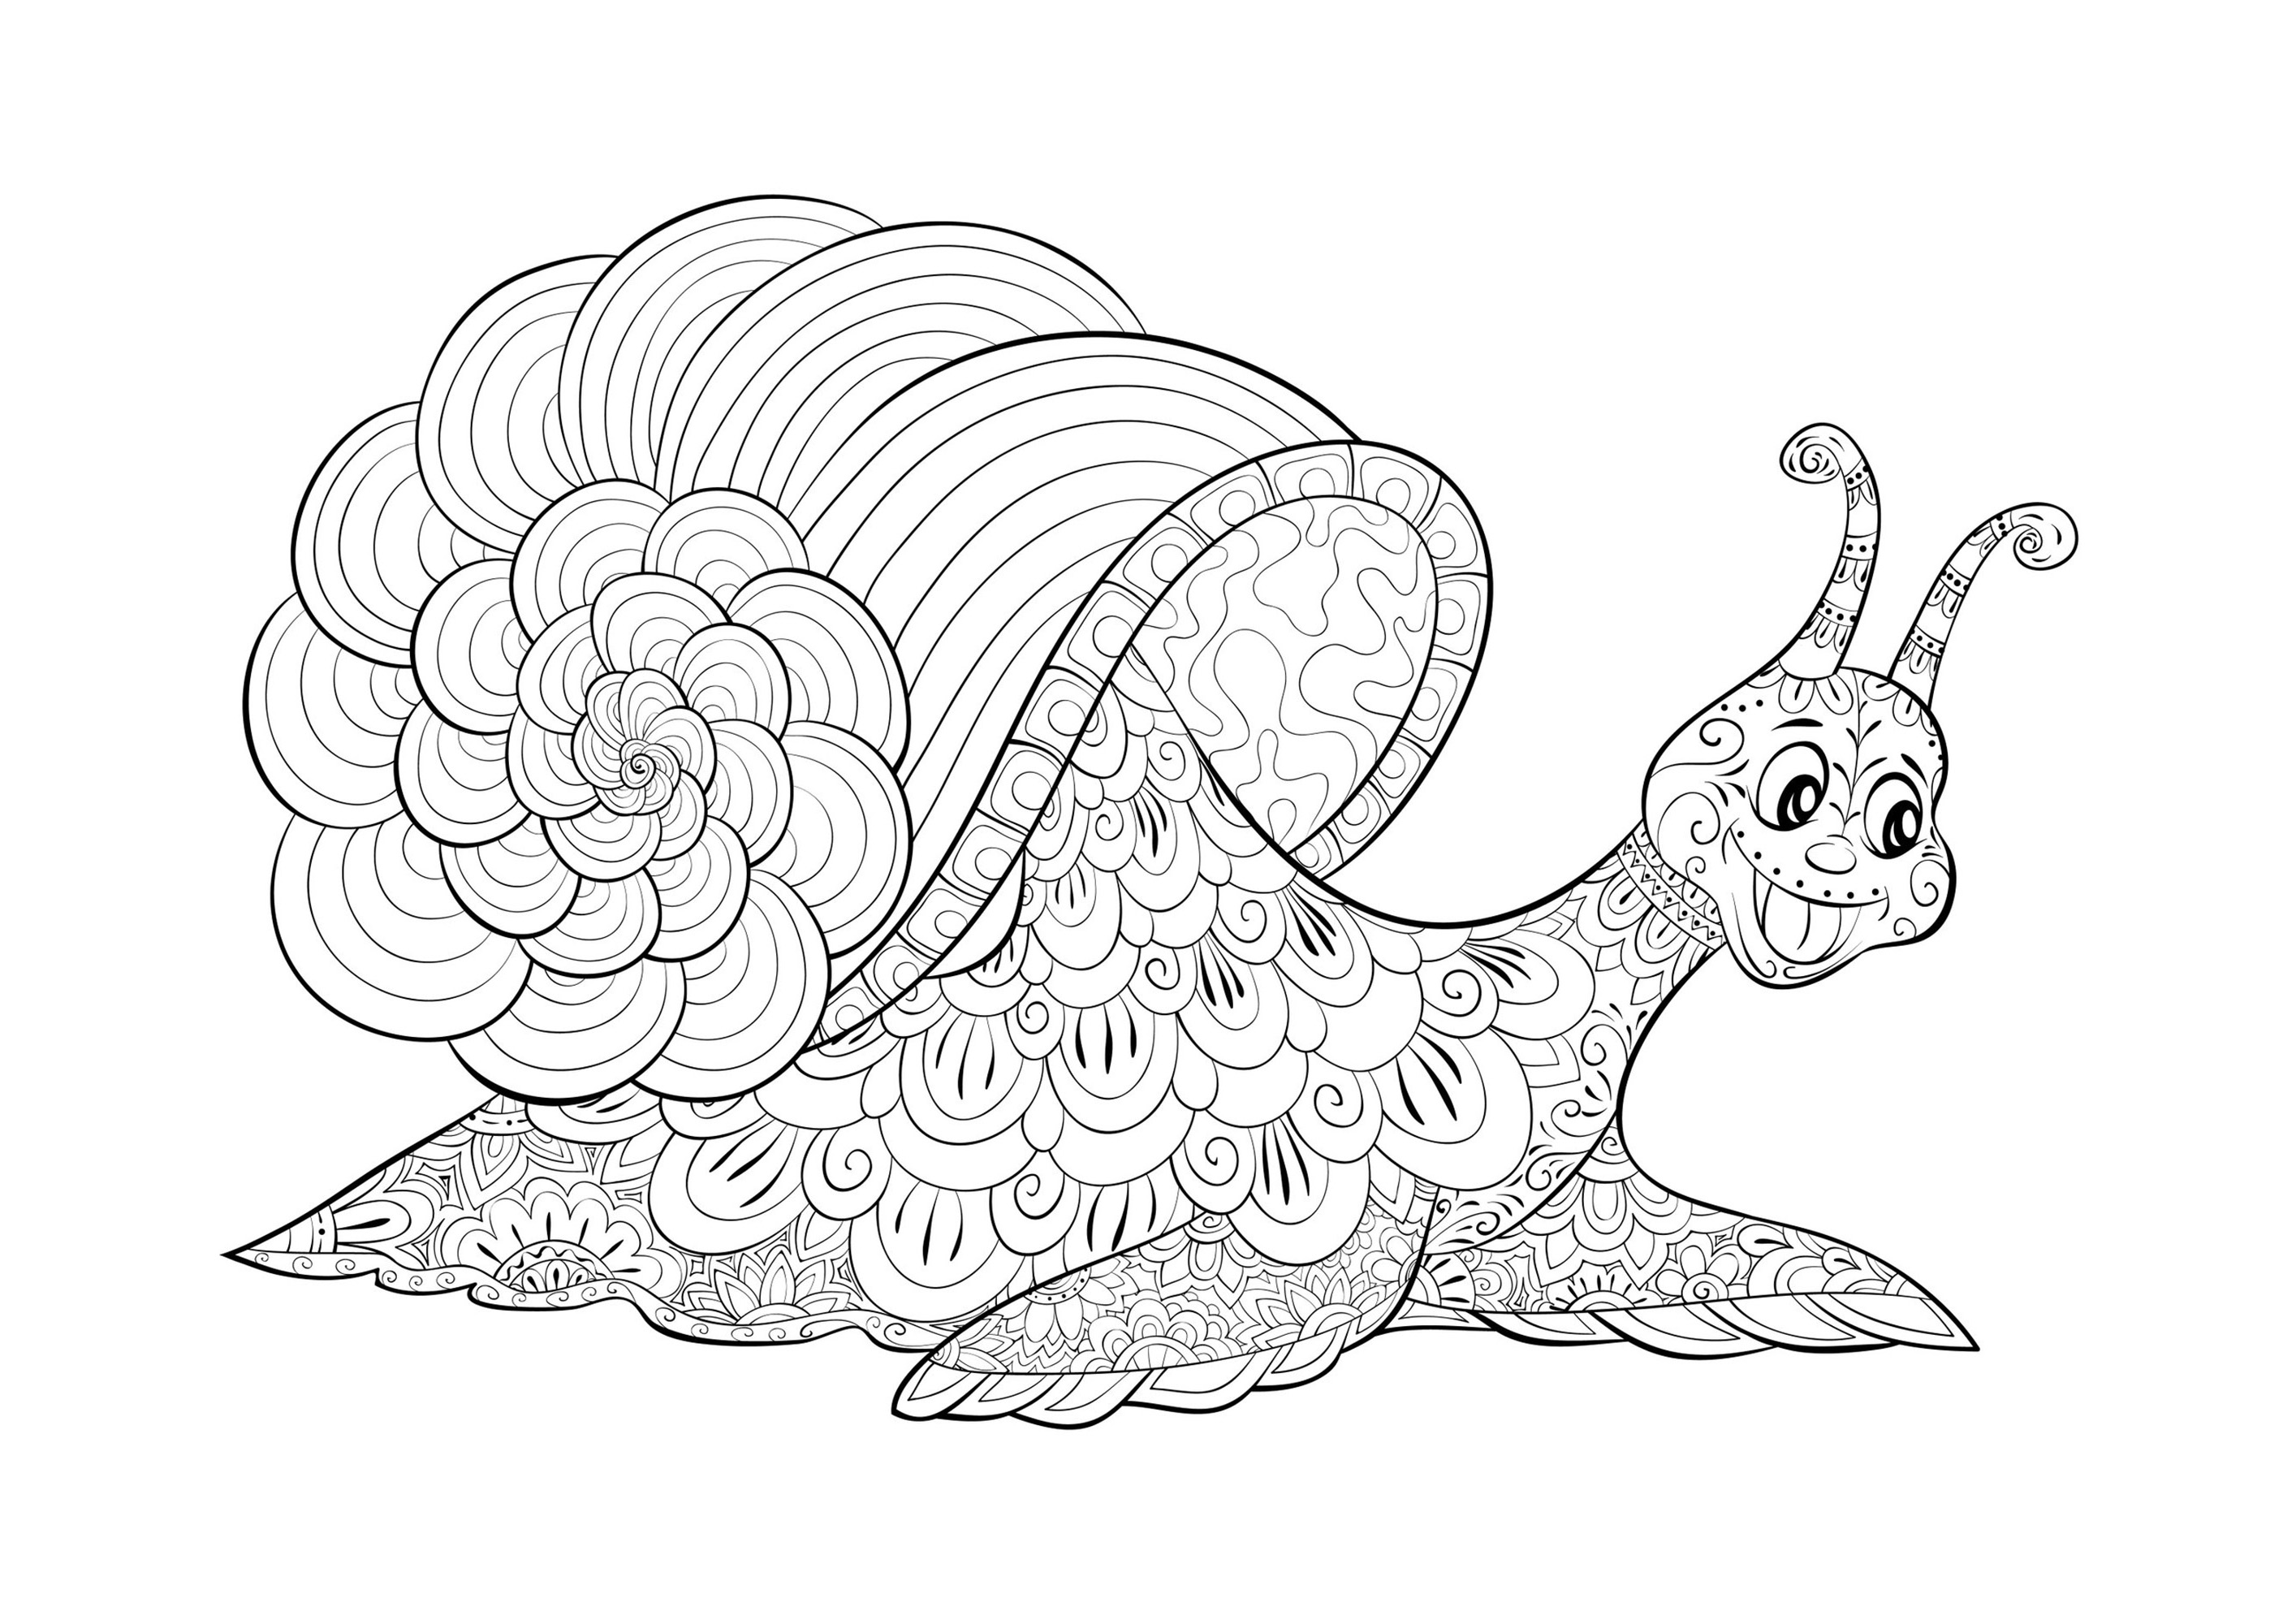 Escargot rigolo - Image avec : Escargot